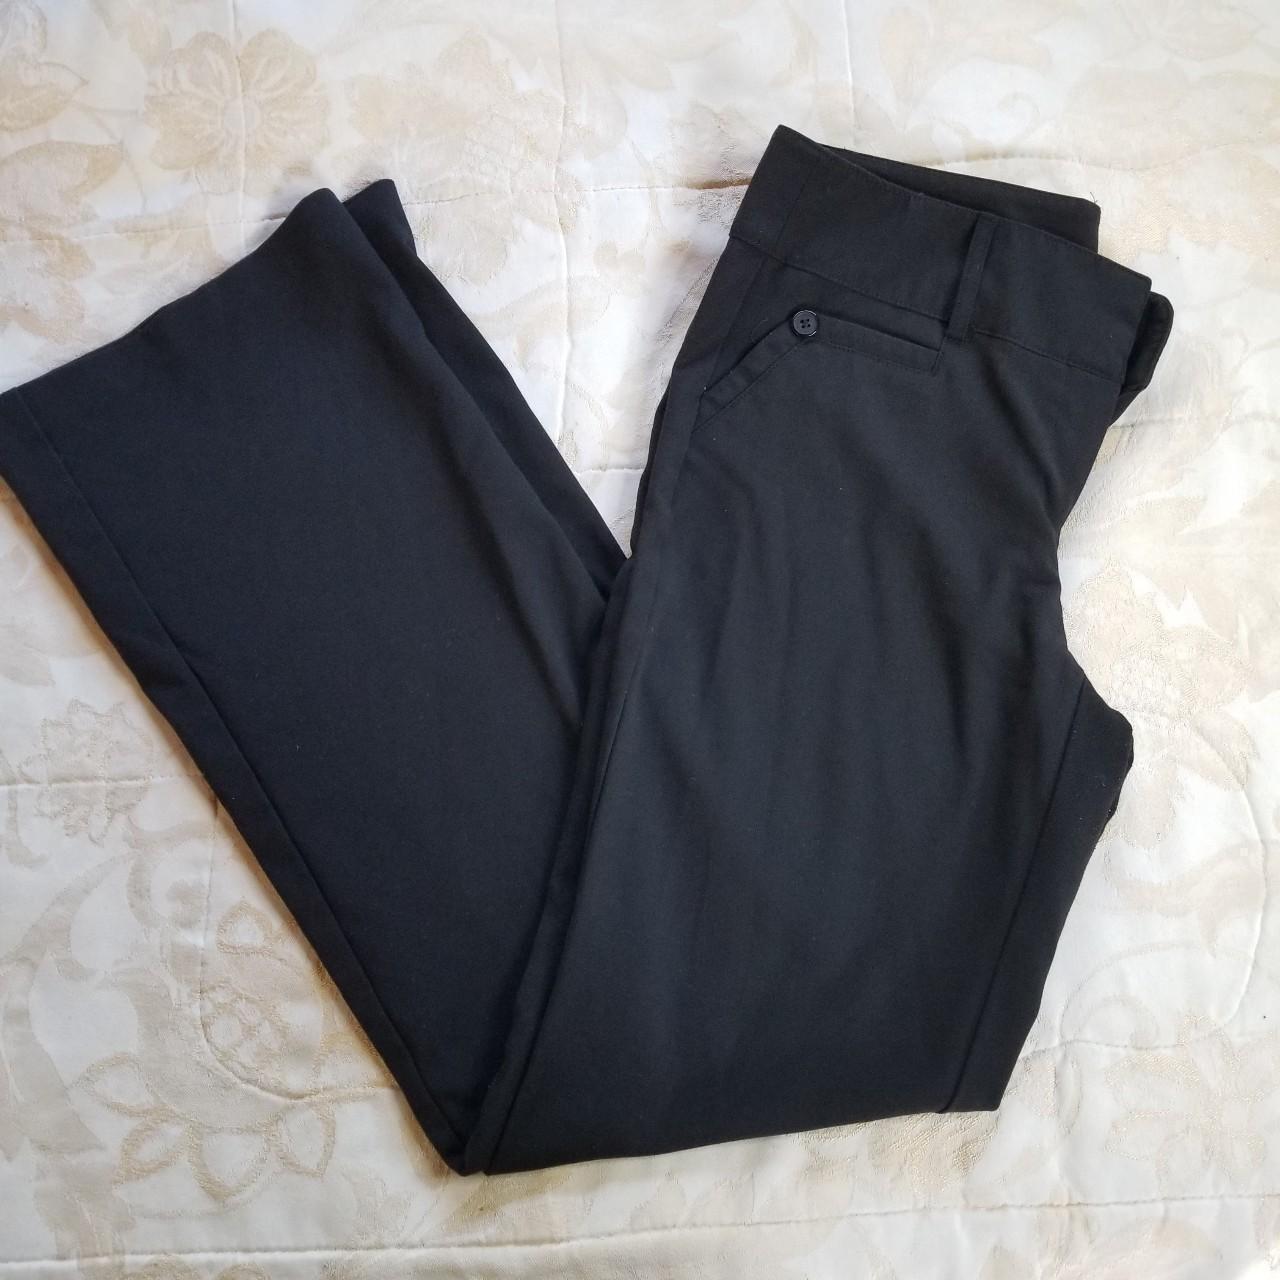 Vintage y2k black slacks Pants features cute... - Depop